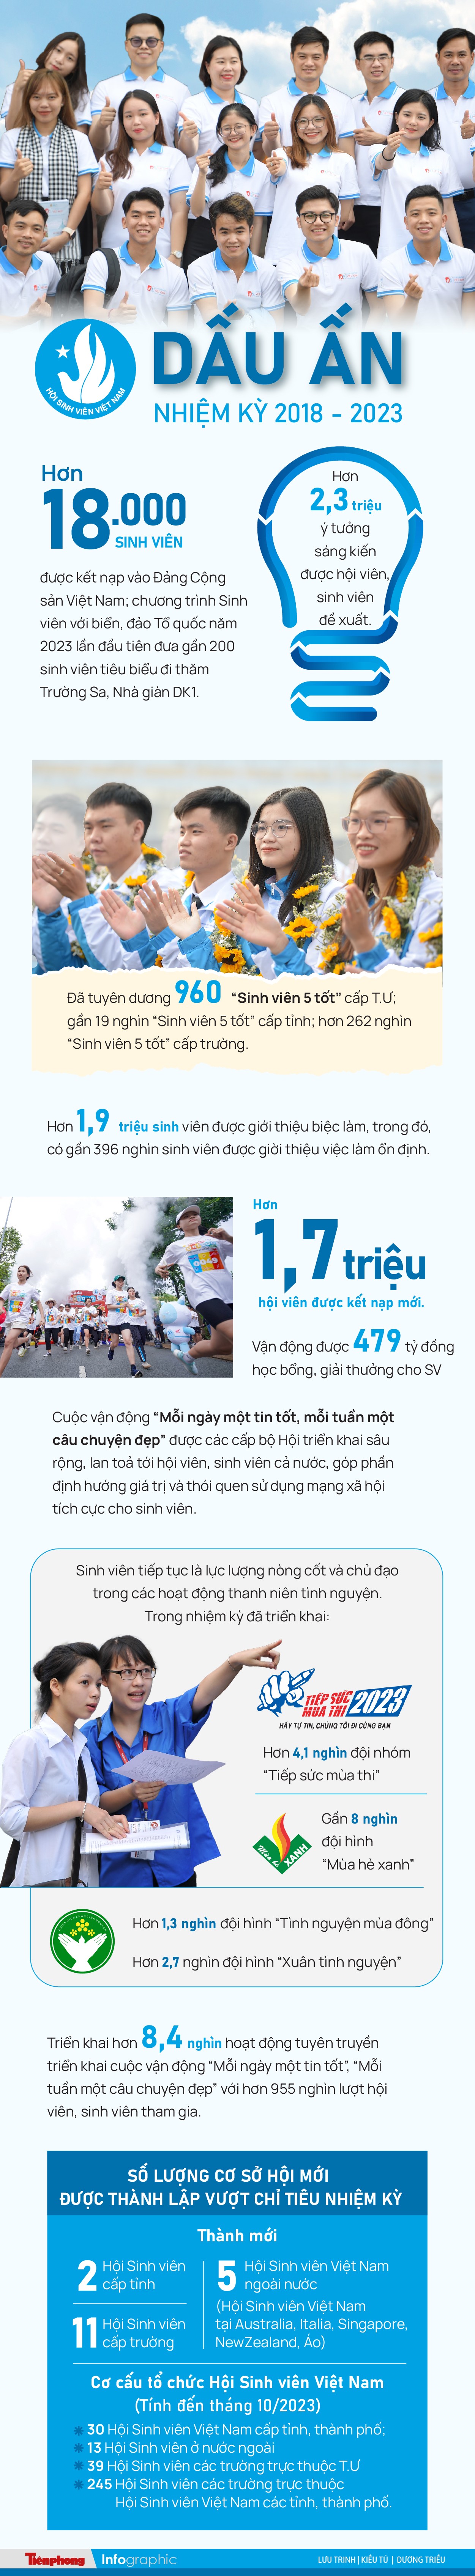 Hội Sinh viên Việt Nam: Những con số ấn tượng trong nhiệm kỳ 2018 - 2023 ảnh 1